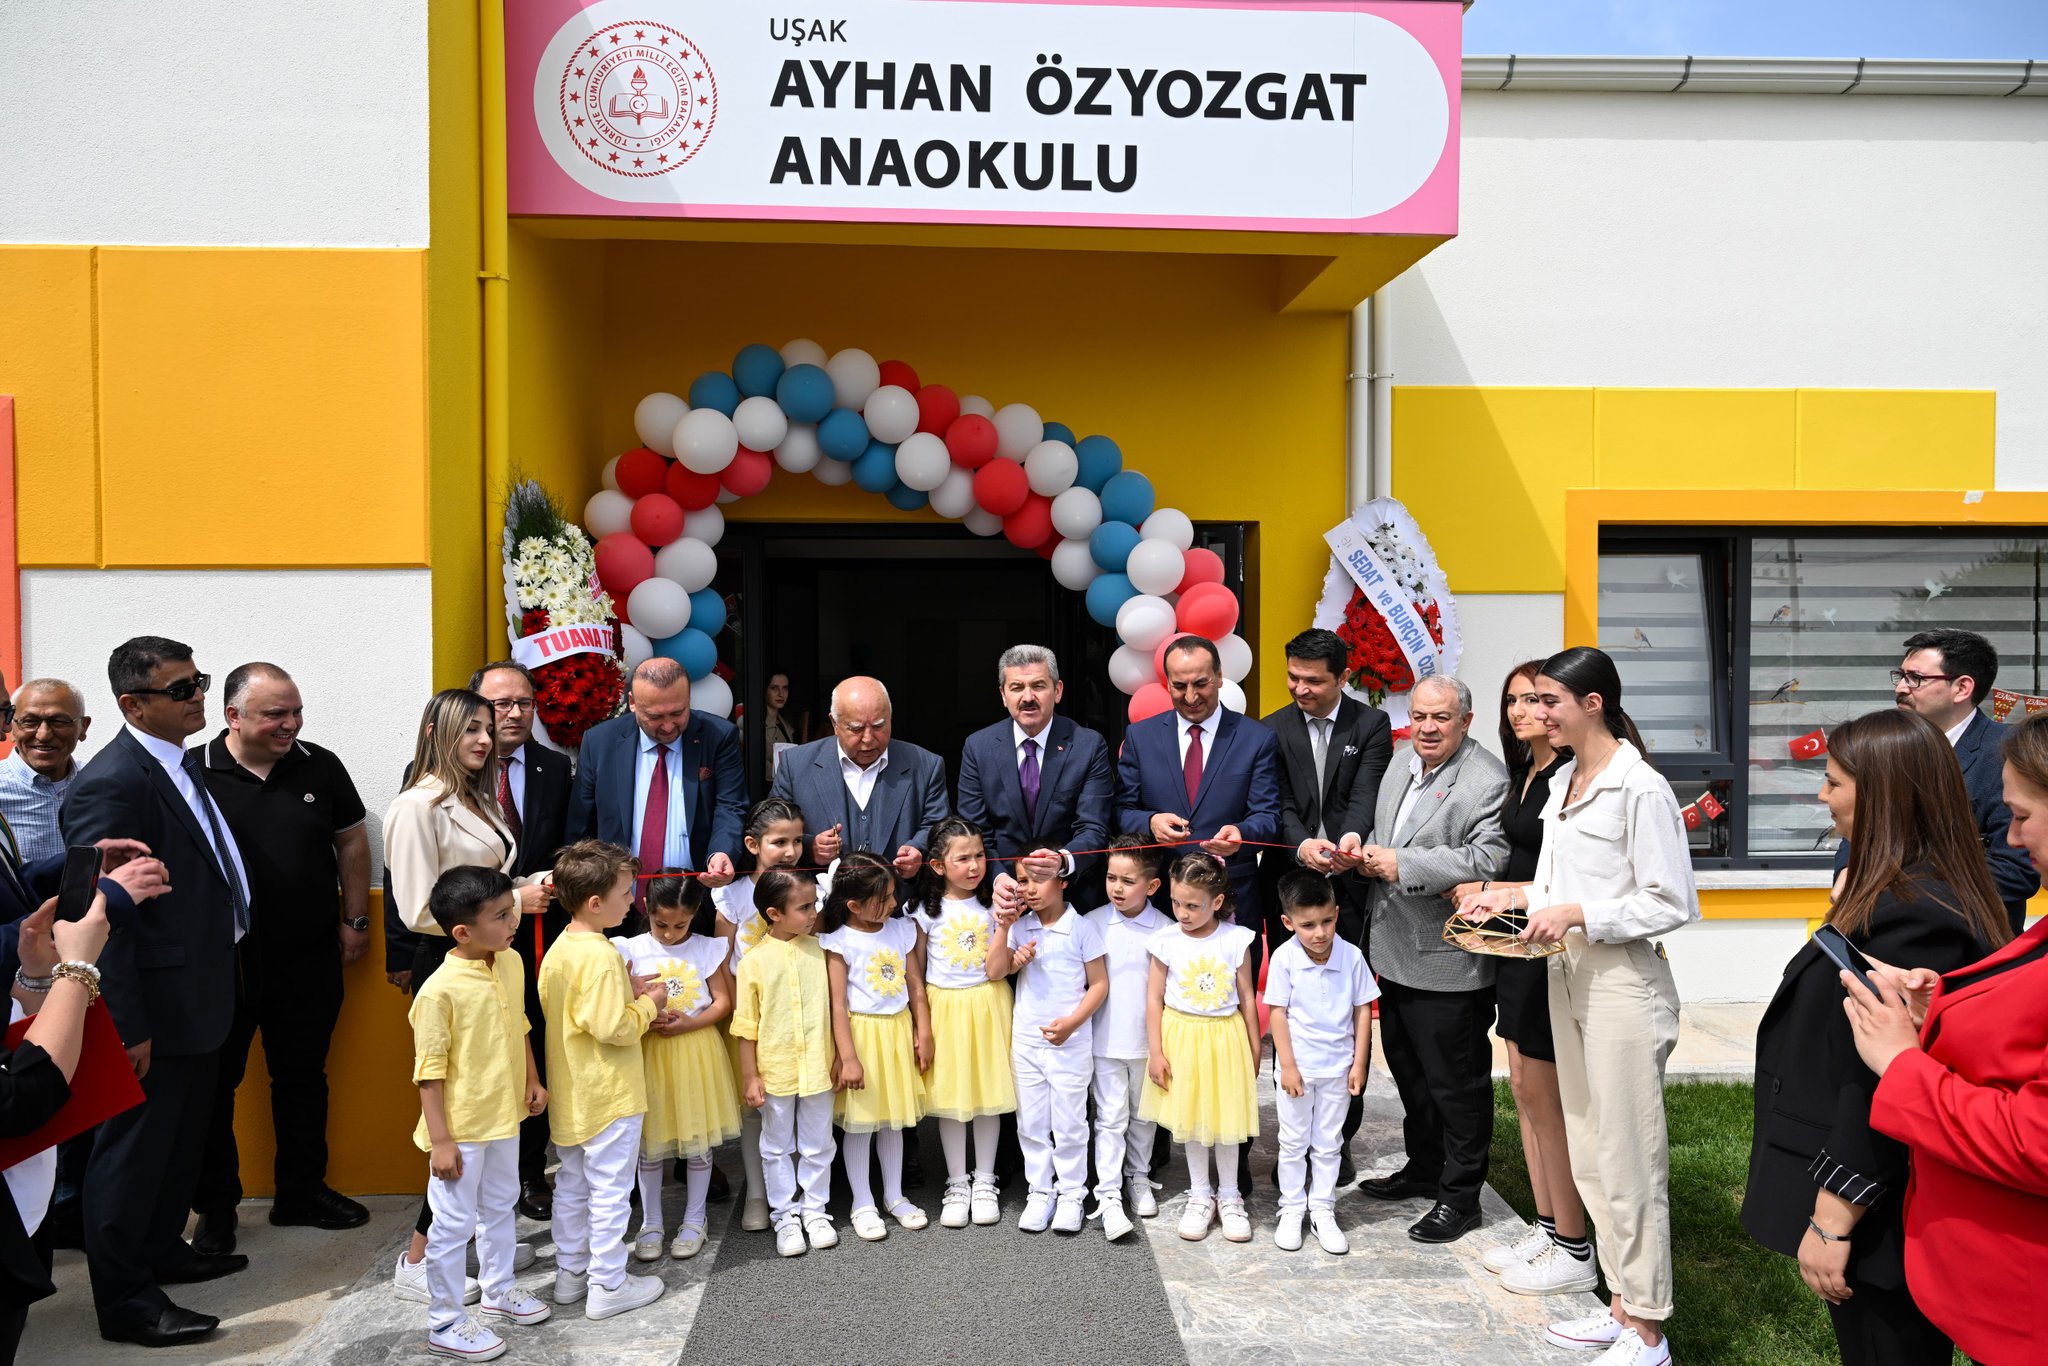 Vali Dr. Turan Ergün, Ovademirler Mahallesi'nde Ayhan Özyozgat Anaokulu'nun Açılışına Katıldı